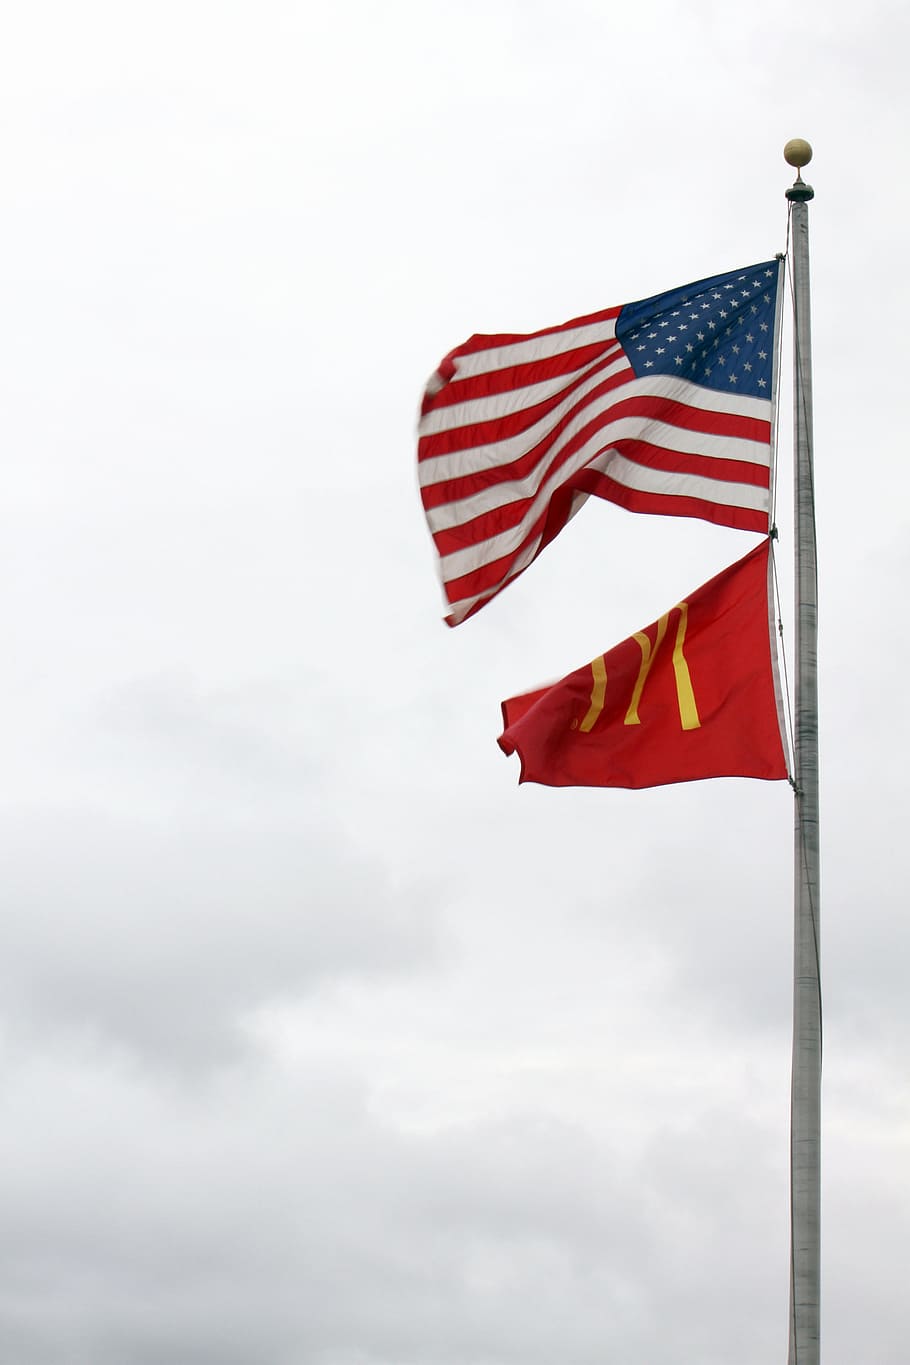 estados unidos, mcdonald's, banderas, símbolos, américa, cielo, nacional, patriótico, globalización, estado